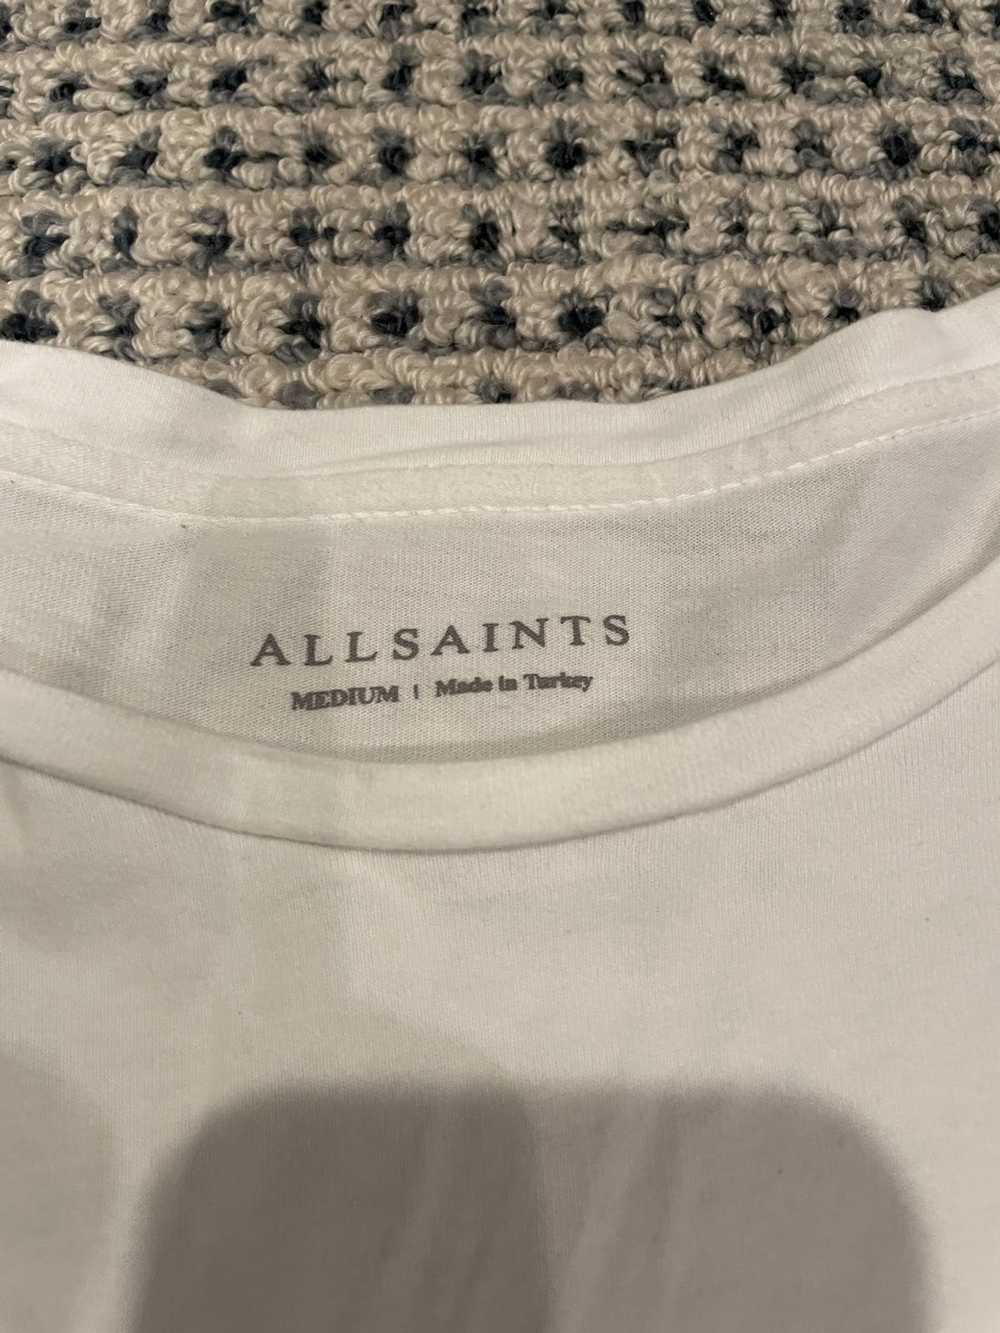 Allsaints Allsaints Tonic Crew T-Shirt - image 3